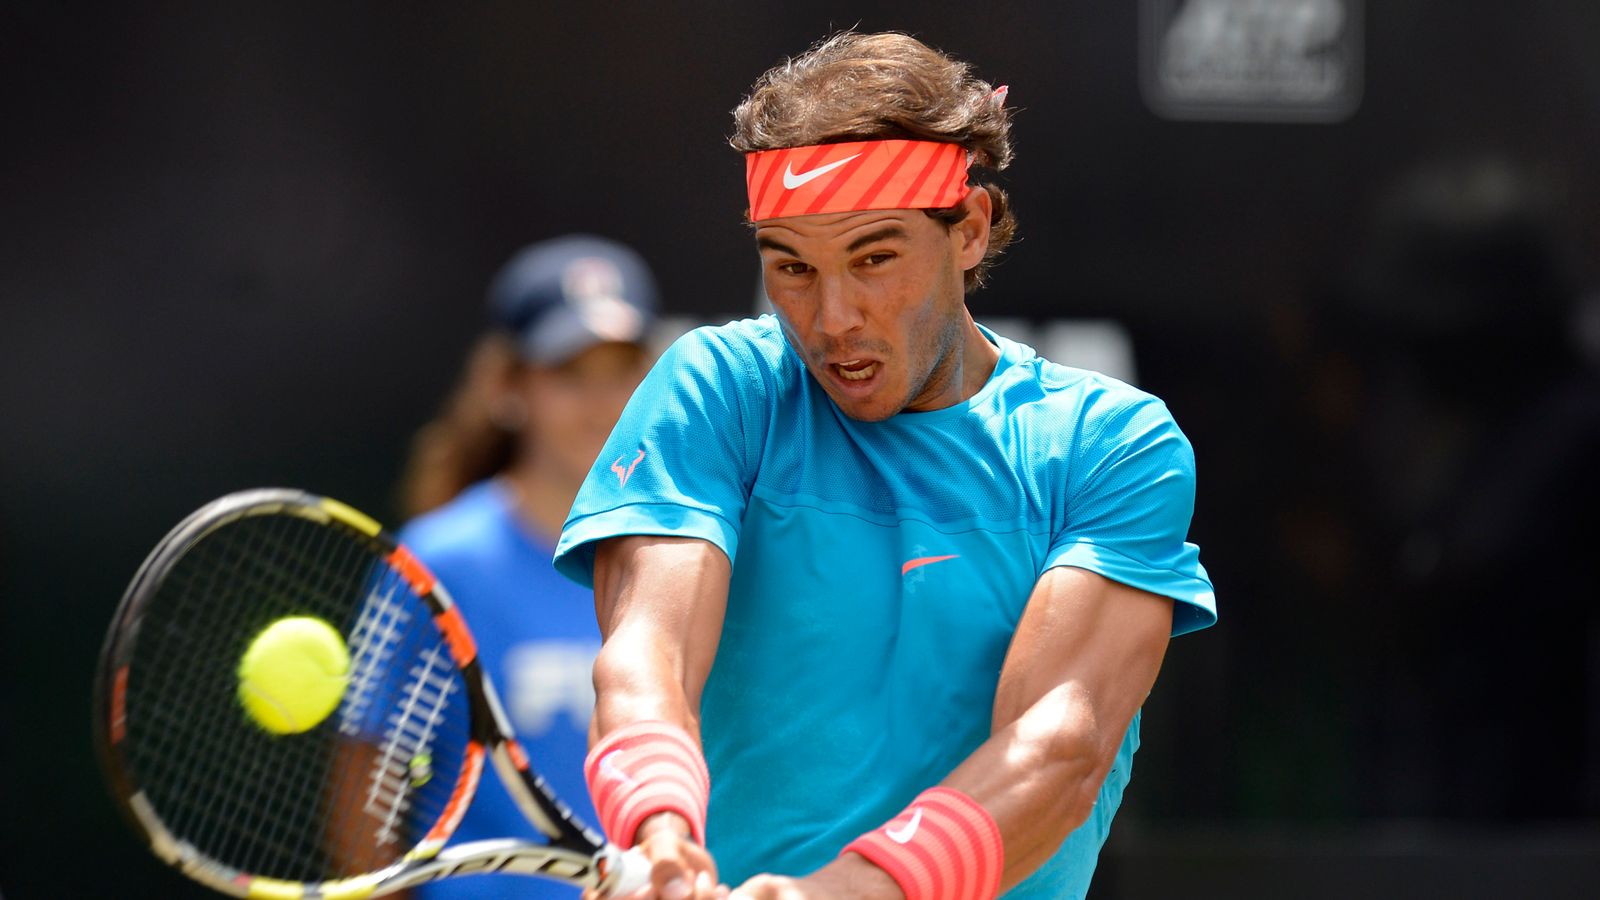 Rafa Nadal's Hamburg win analysed by Mark Petchey | Tennis News | Sky